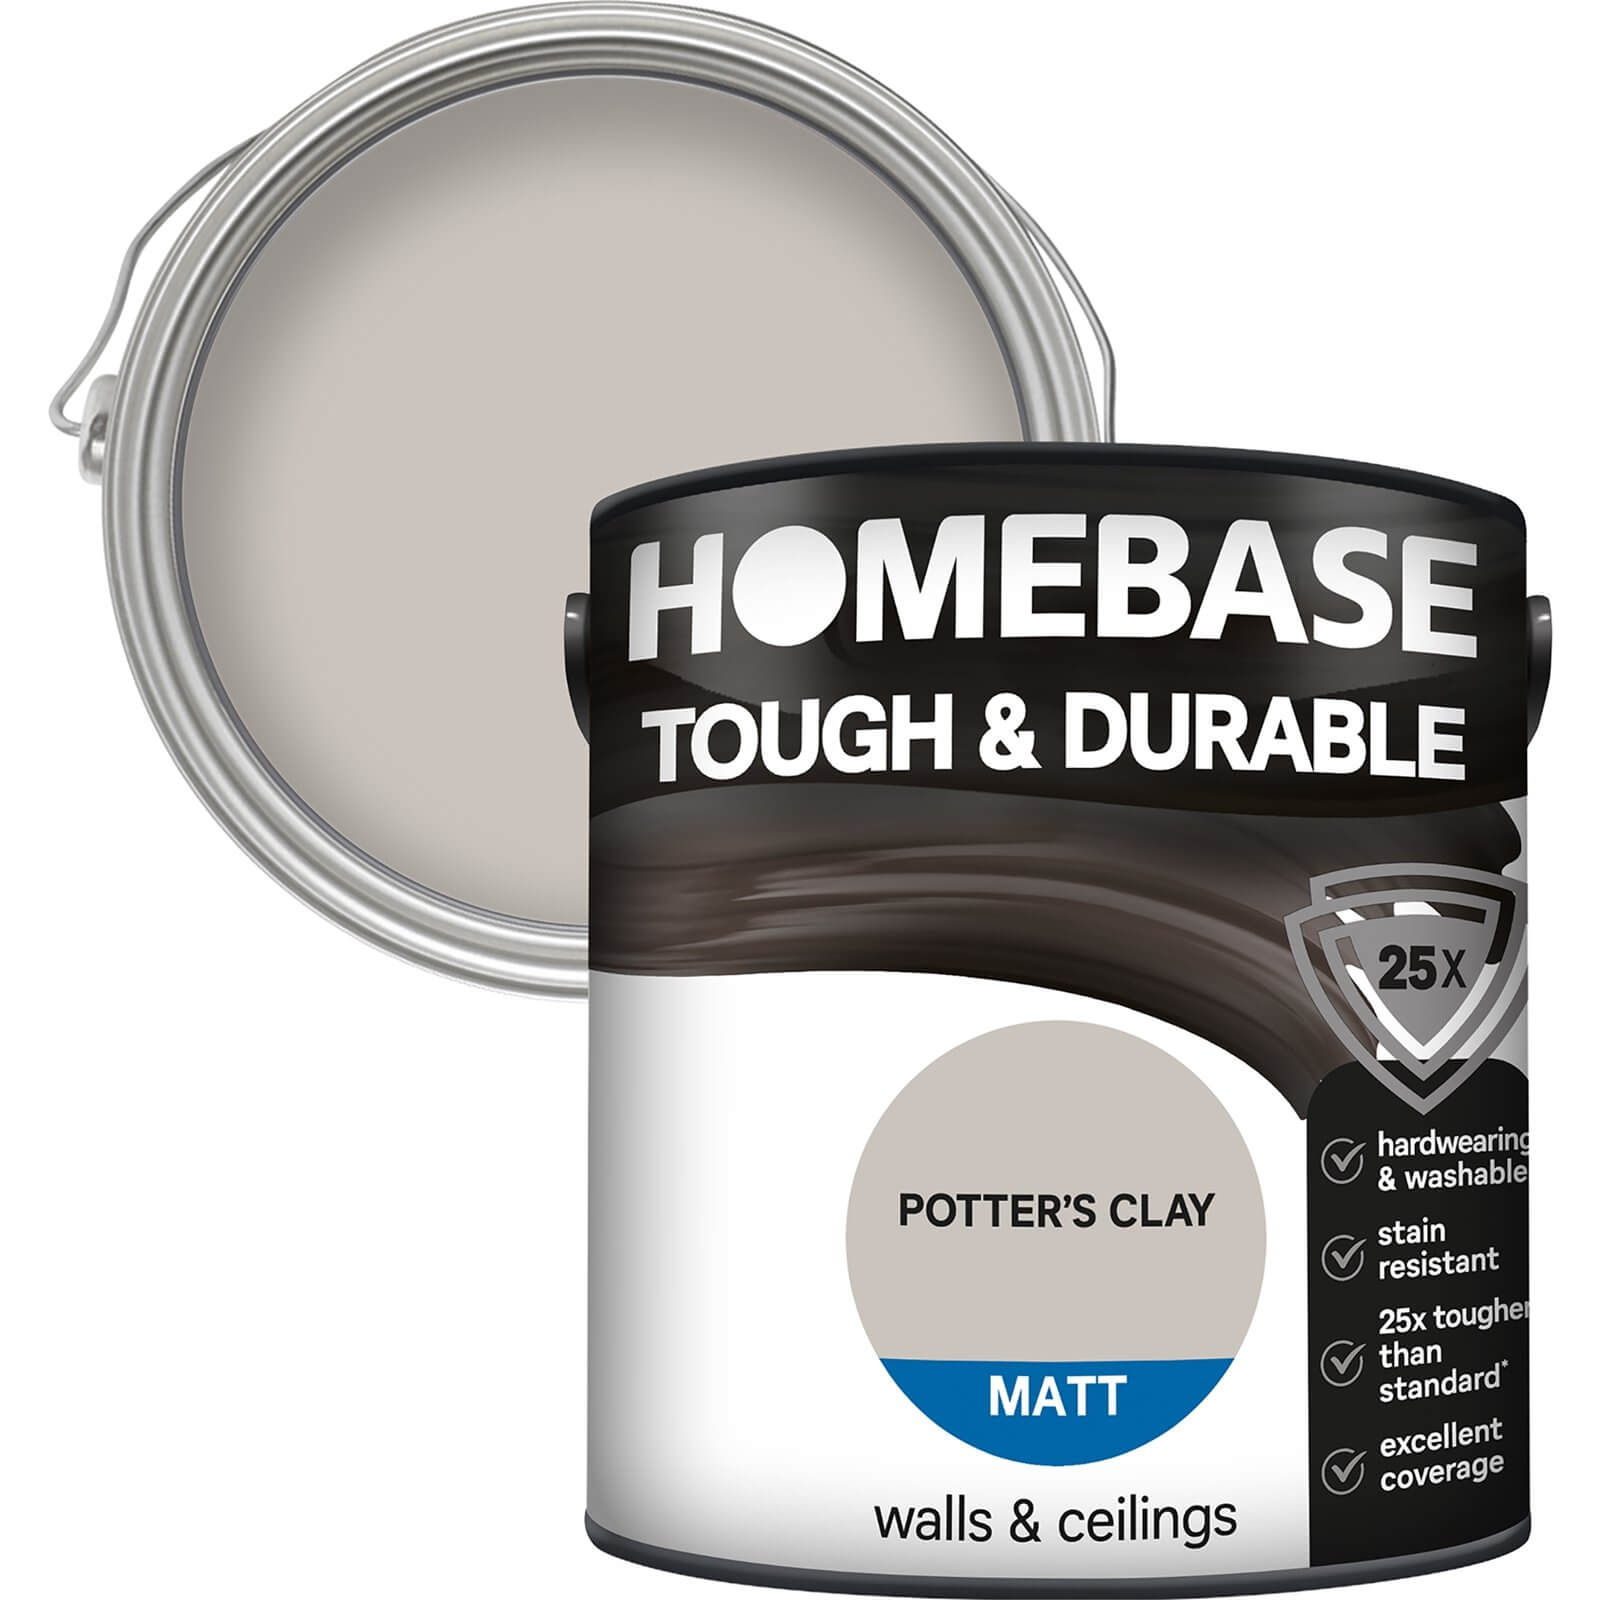 Homebase Tough & Durable Matt Paint Potters Clay - 2.5L